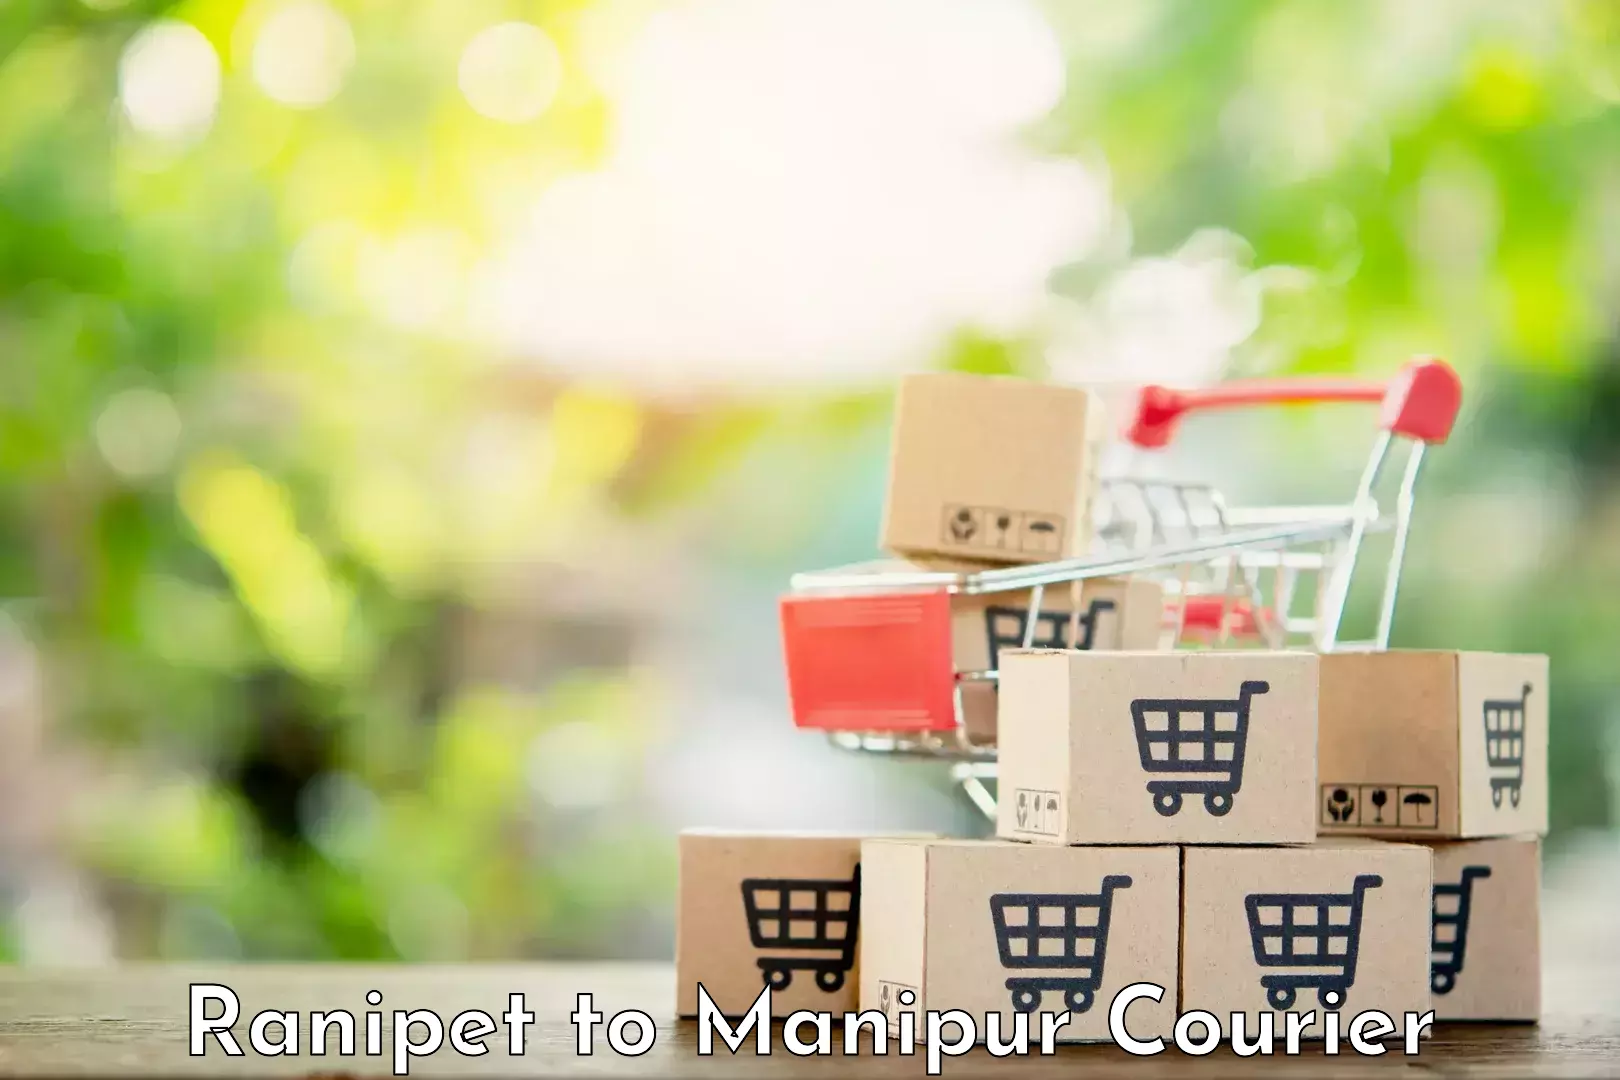 Express logistics providers Ranipet to NIT Manipur